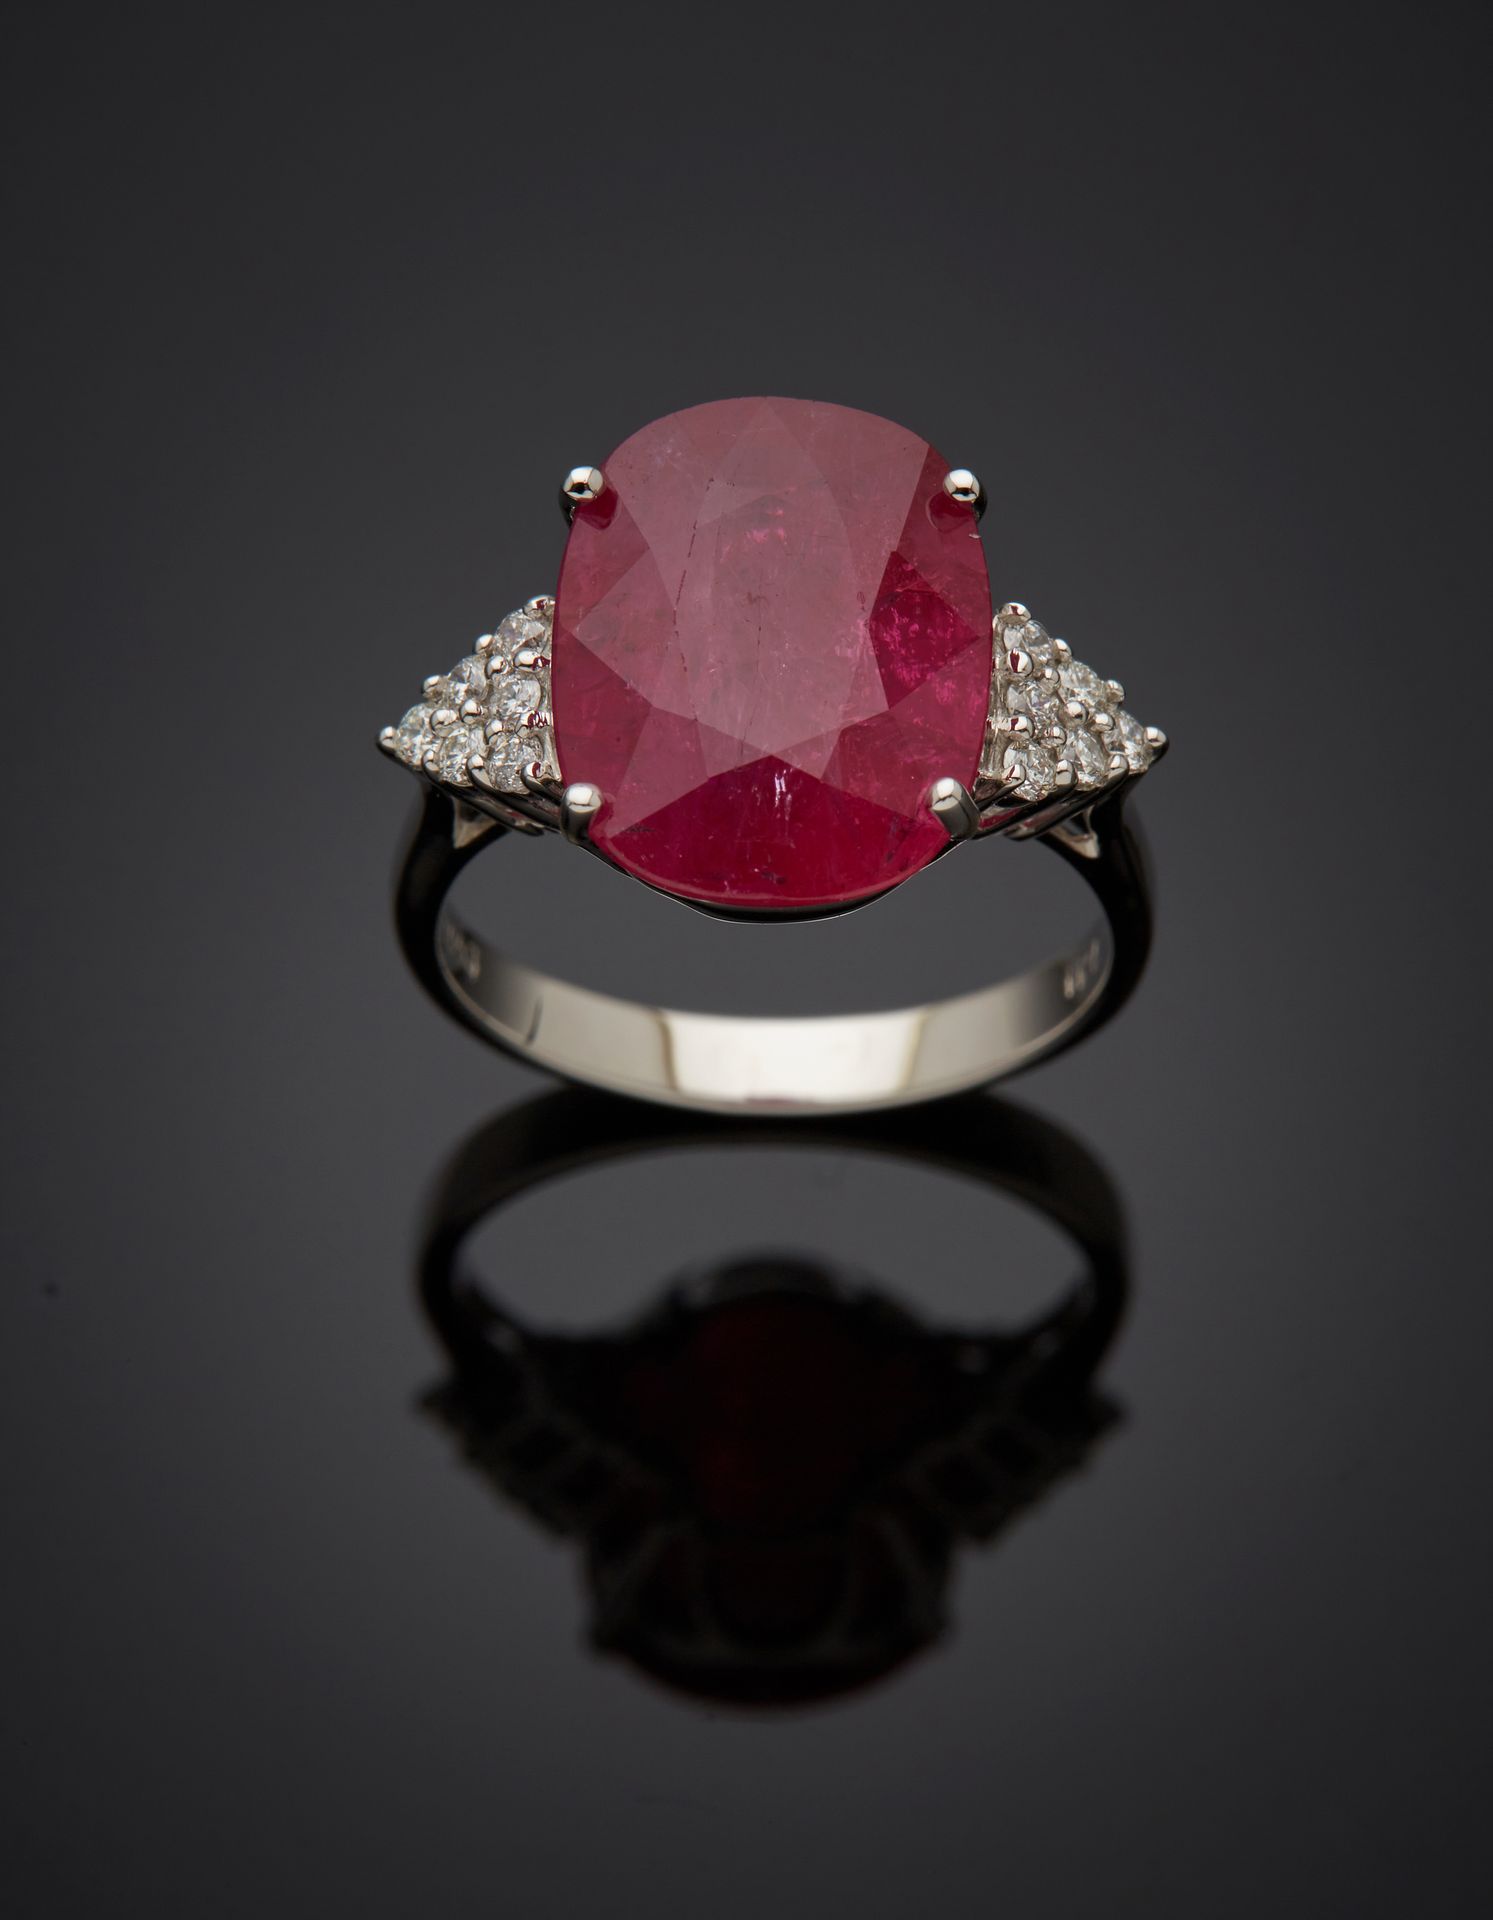 Null 一枚白金戒指（750‰），镶嵌着一颗重达7.1克拉的椭圆形红宝石，肩部有12颗明亮式切割钻石。 
指头：54。总重量：4.7克。